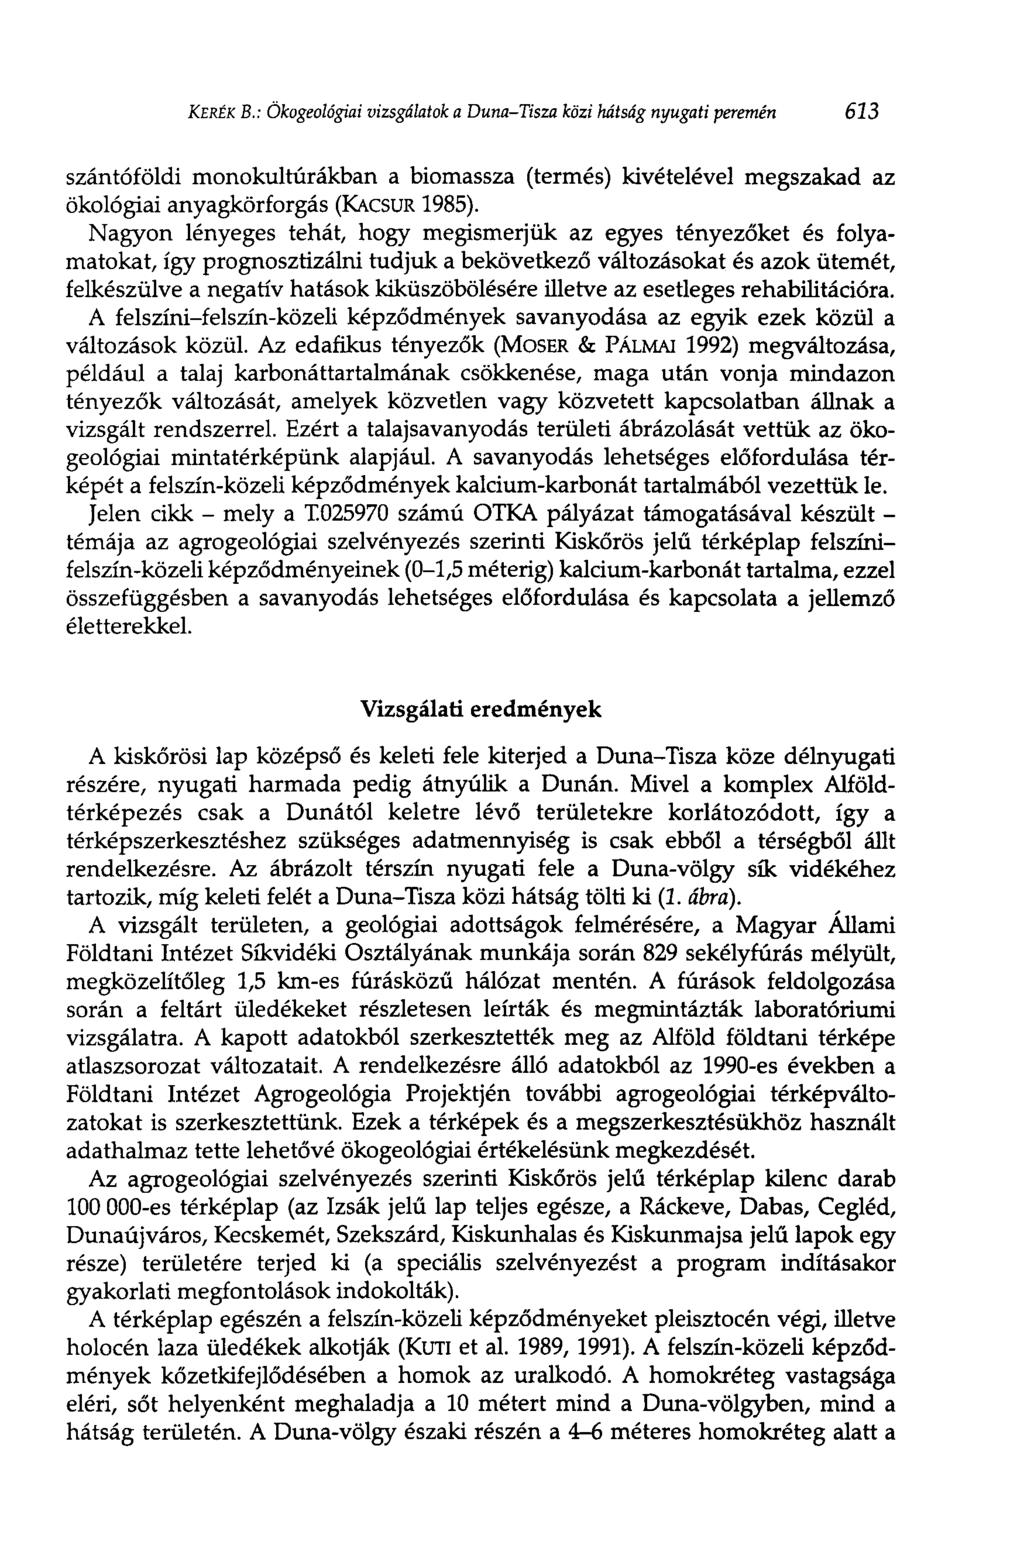 KERÉK В.: Ökogeológiai vizsgálatok a Duna-Tisza közi hátság nyugati veremén 613 szántóföldi monokultúrákban a biomassza (termés) kivételével megszakad az ökológiai anyagkörforgás (KACSUR 1985).